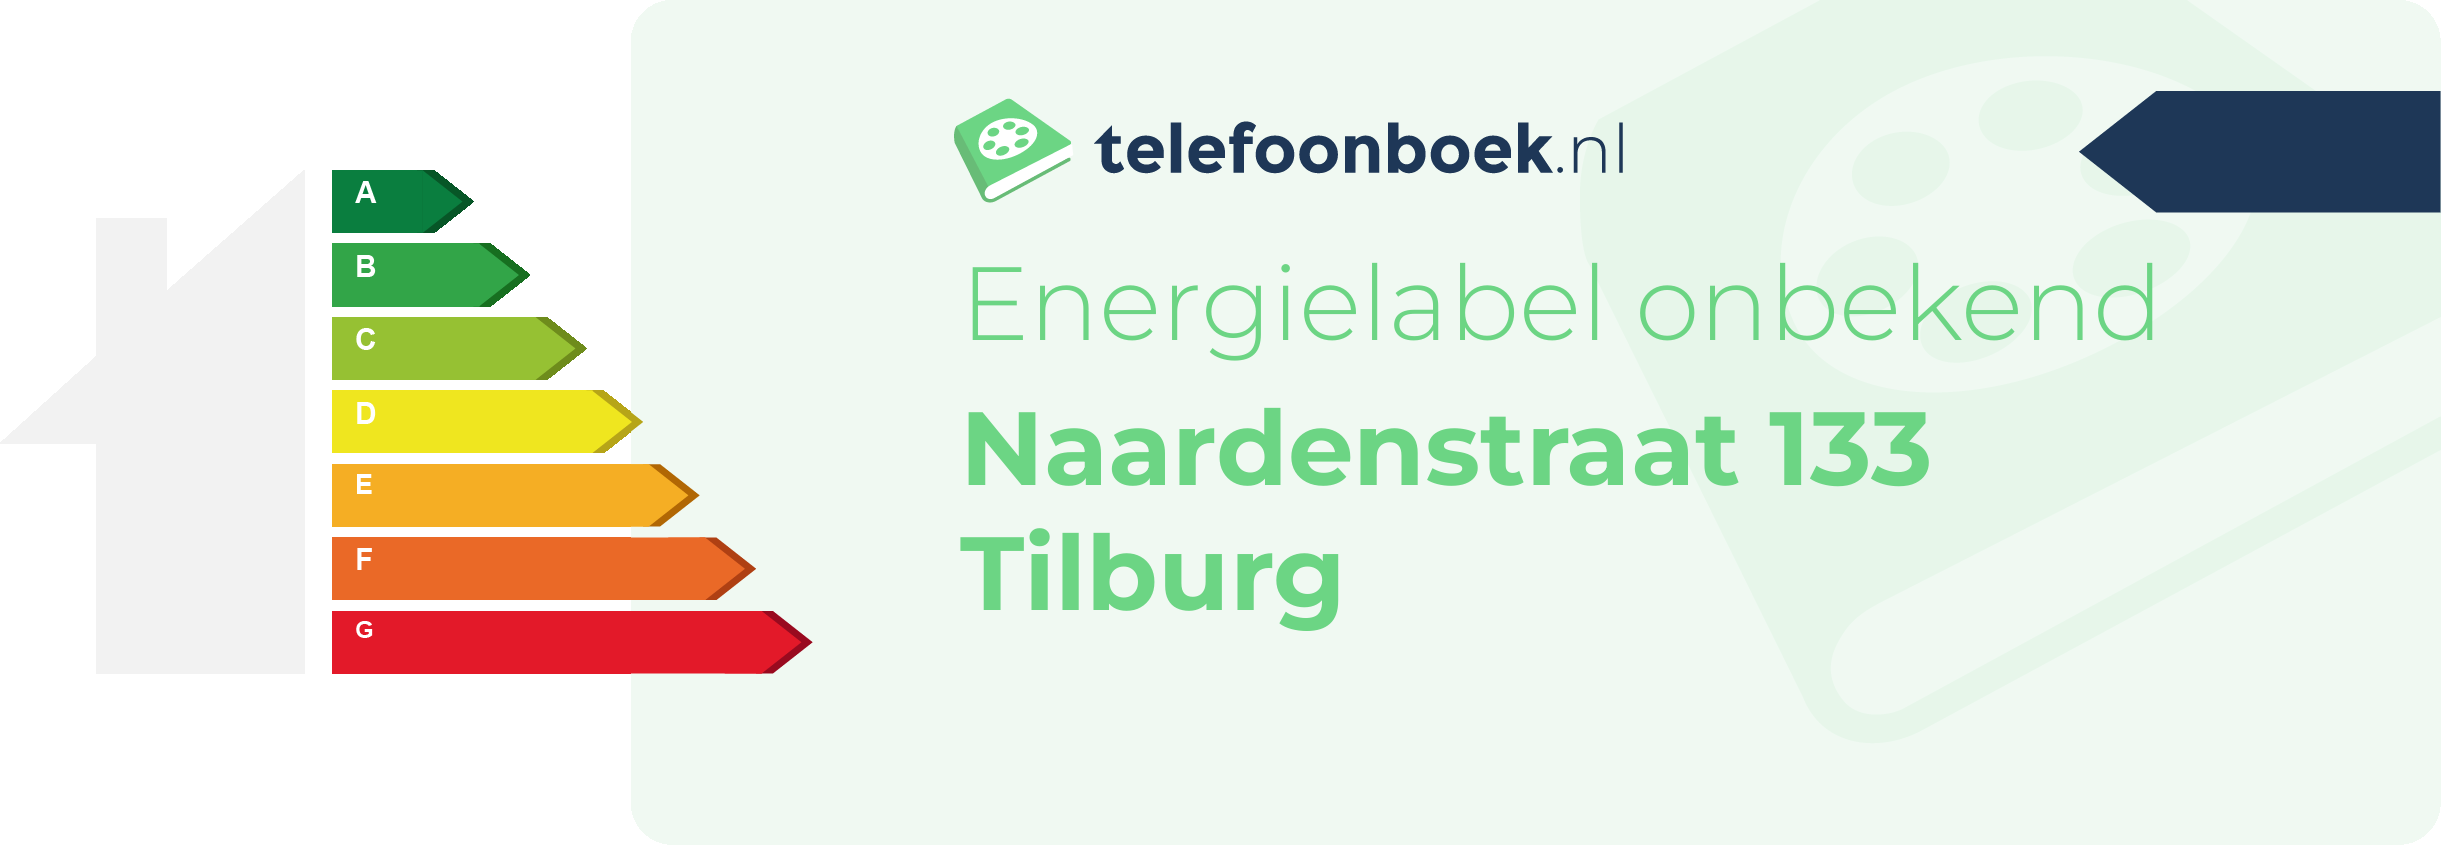 Energielabel Naardenstraat 133 Tilburg